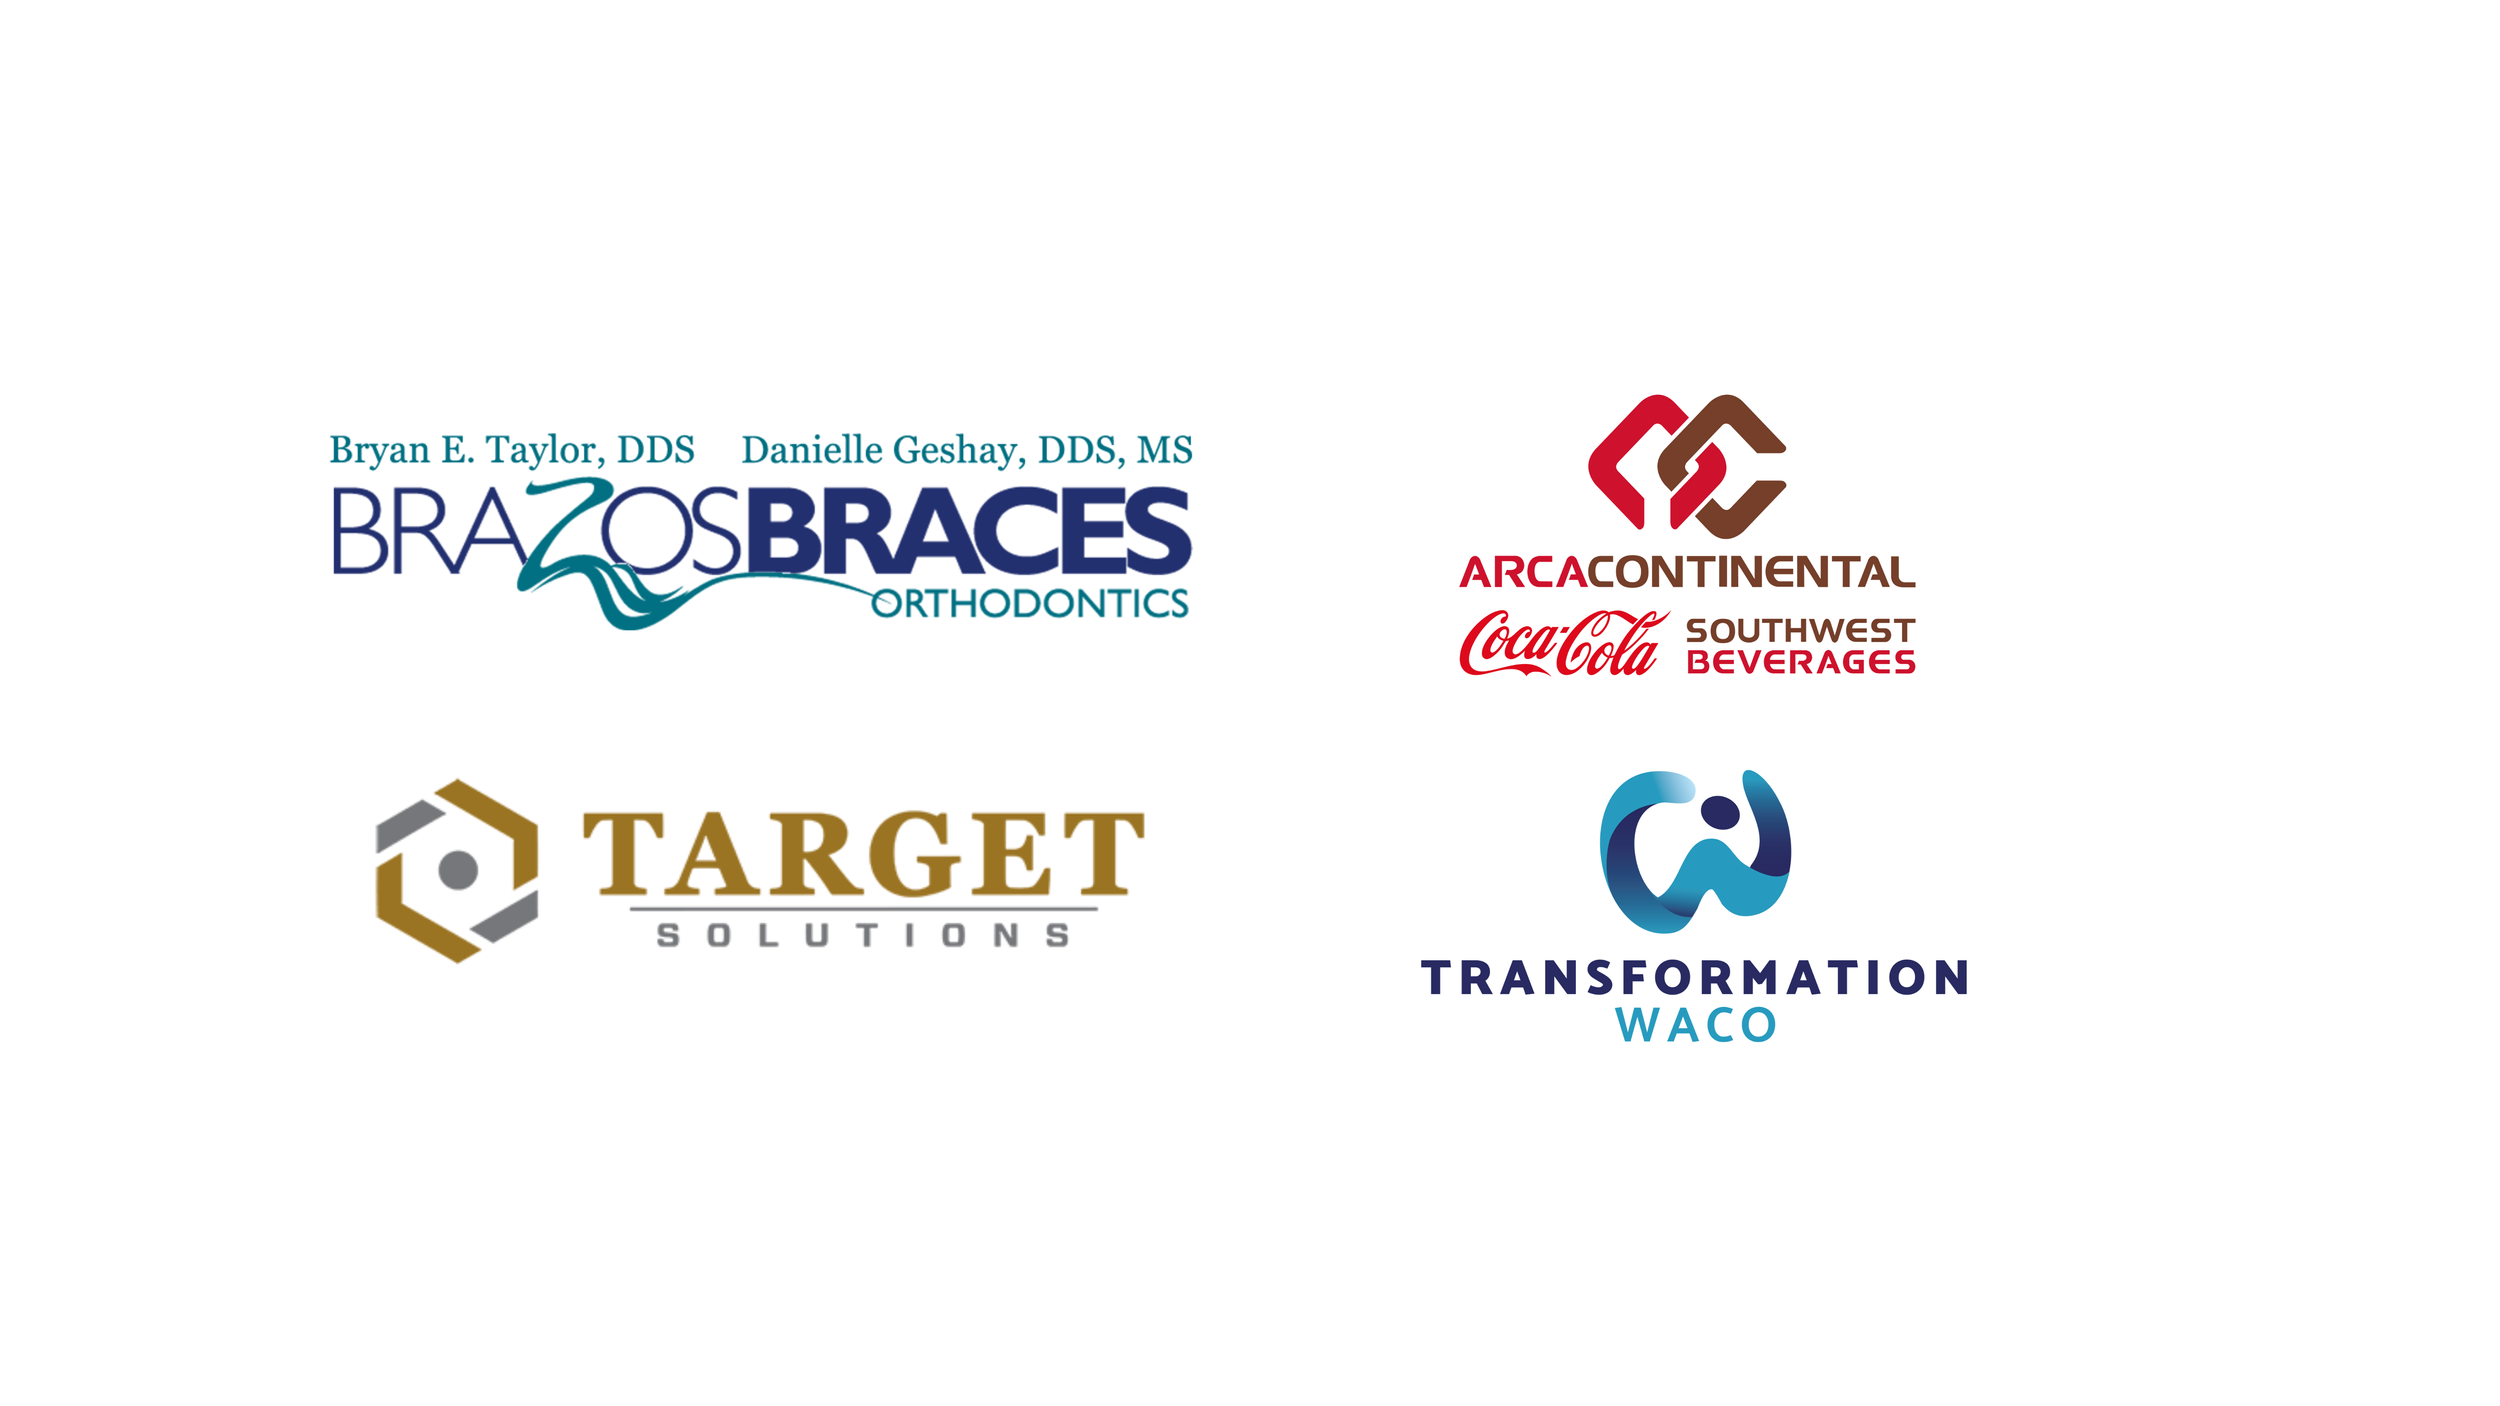 Logotipos para Brazos Braces, Target Solutions, Transformation Waco y Coca-Cola Southwest Beverages